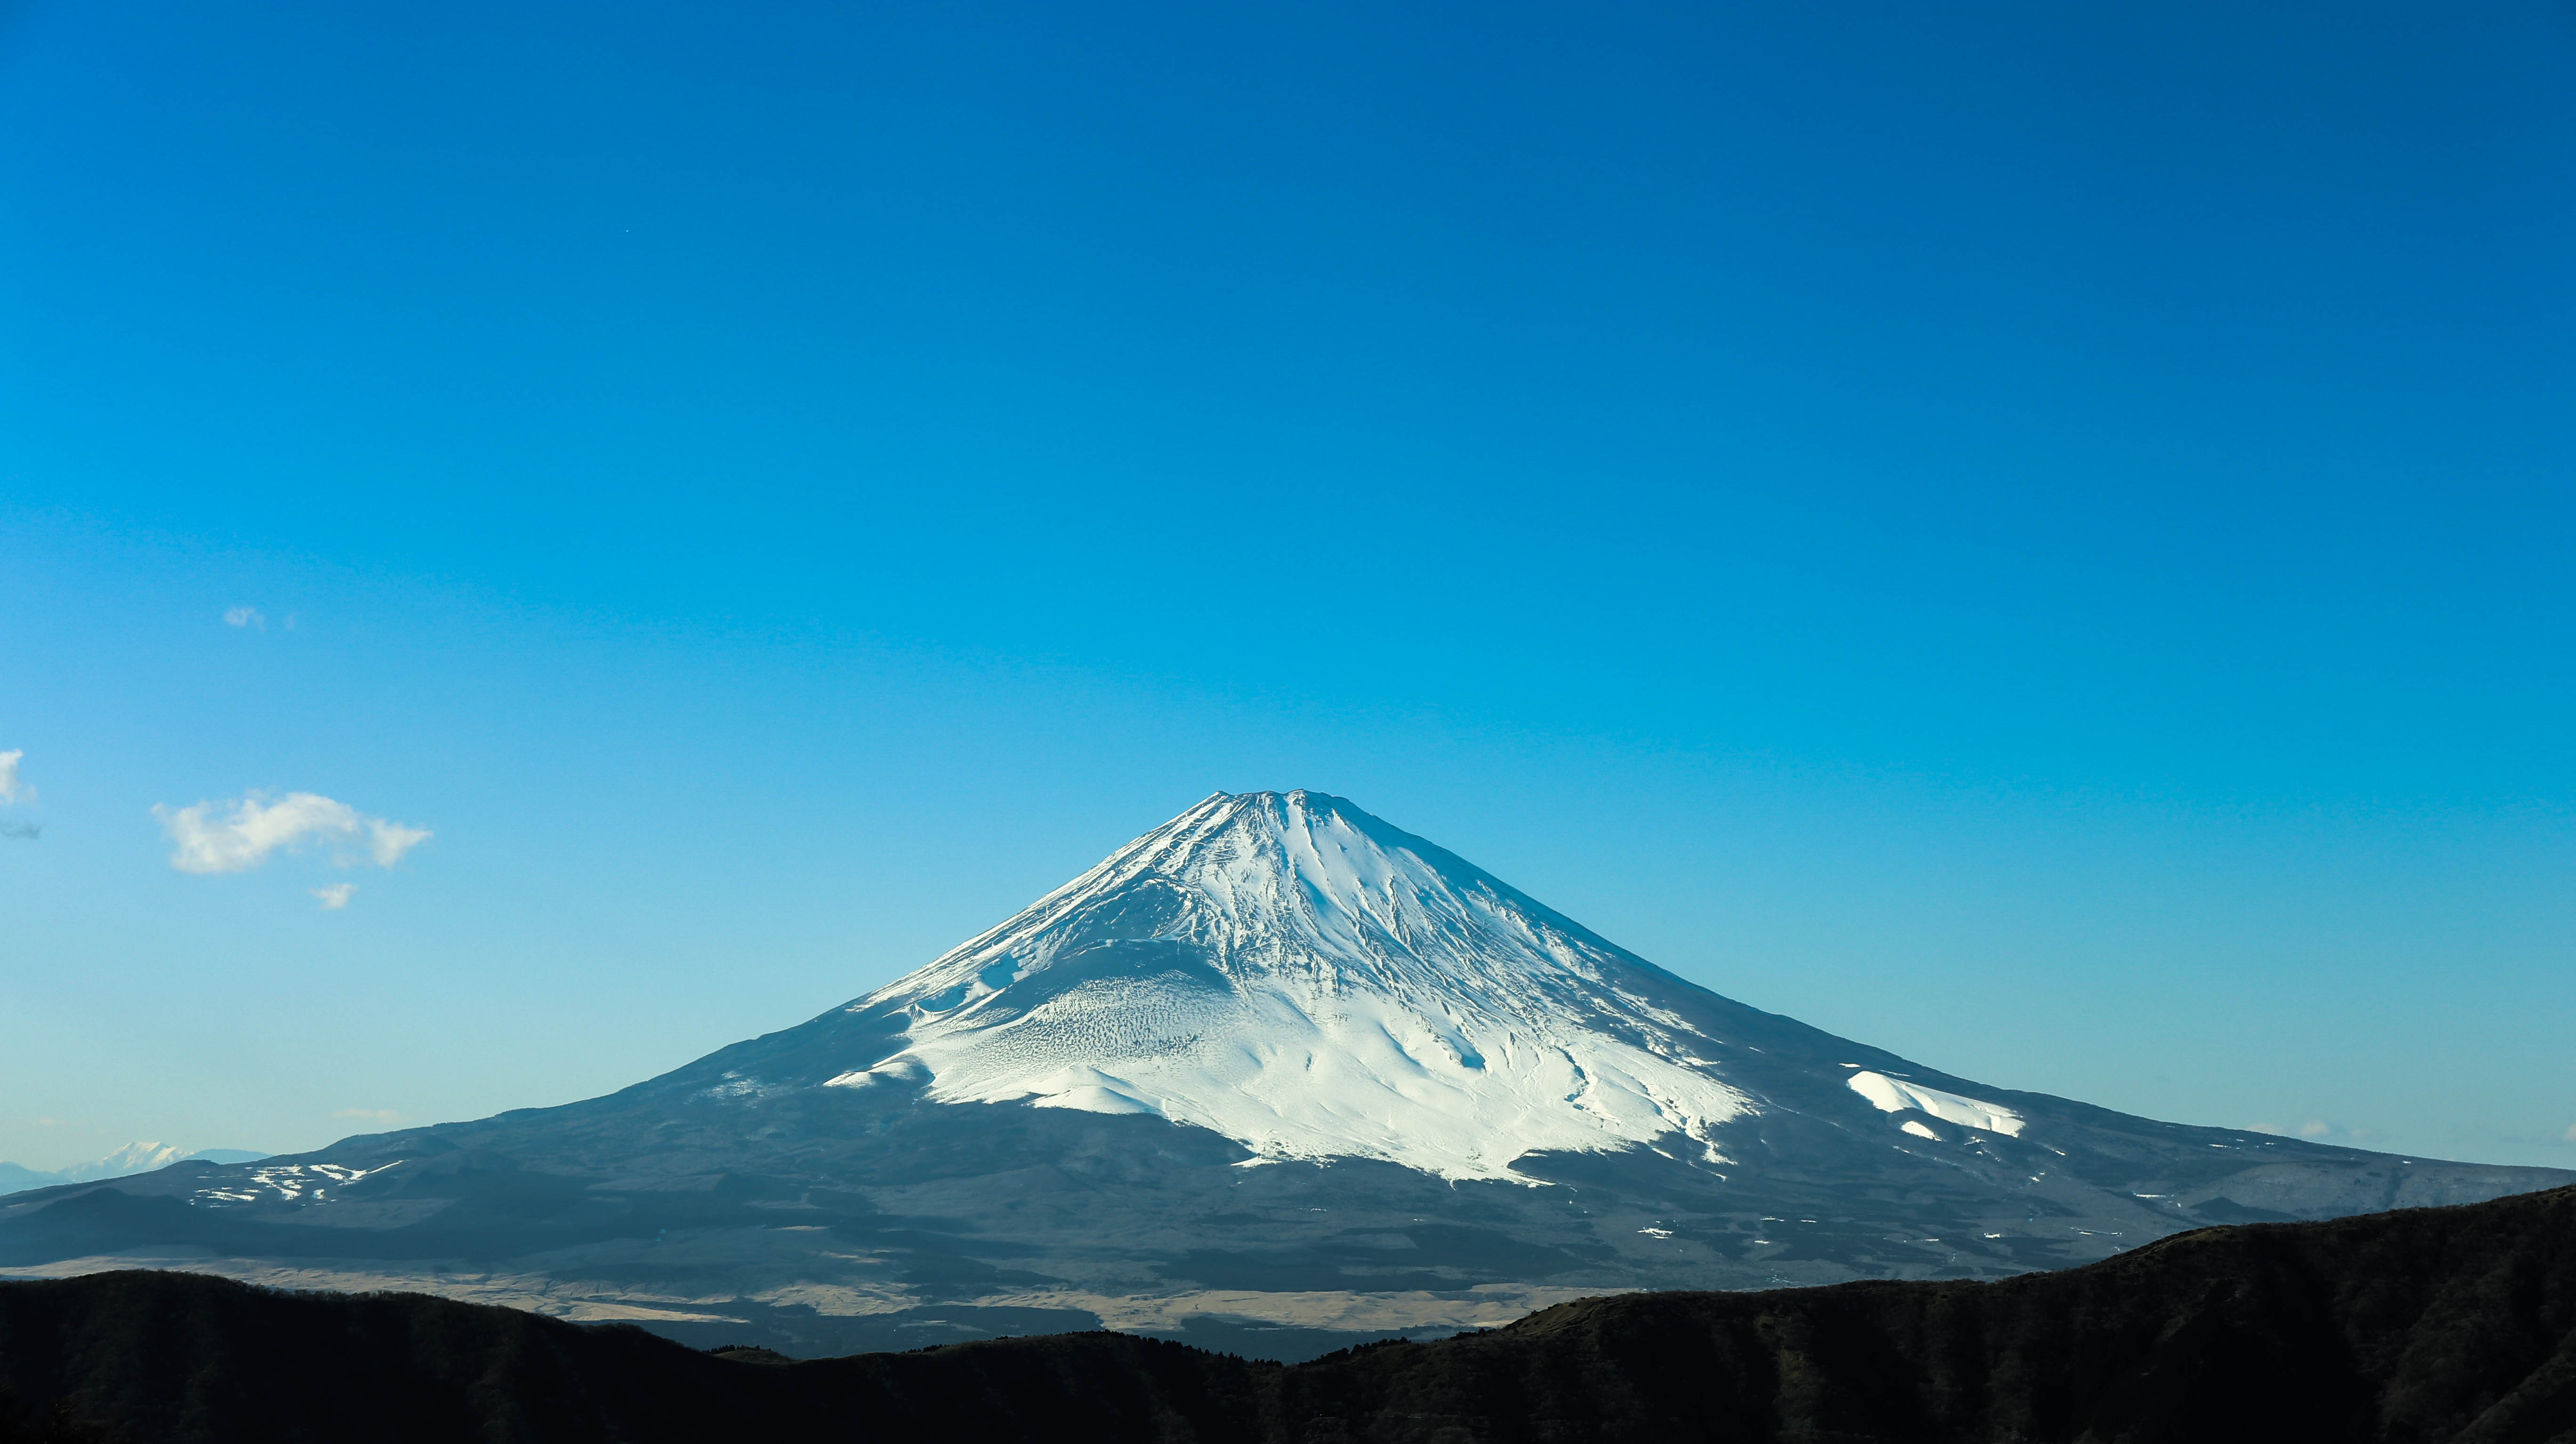 Mt. Fuji by Shing Kit Lee